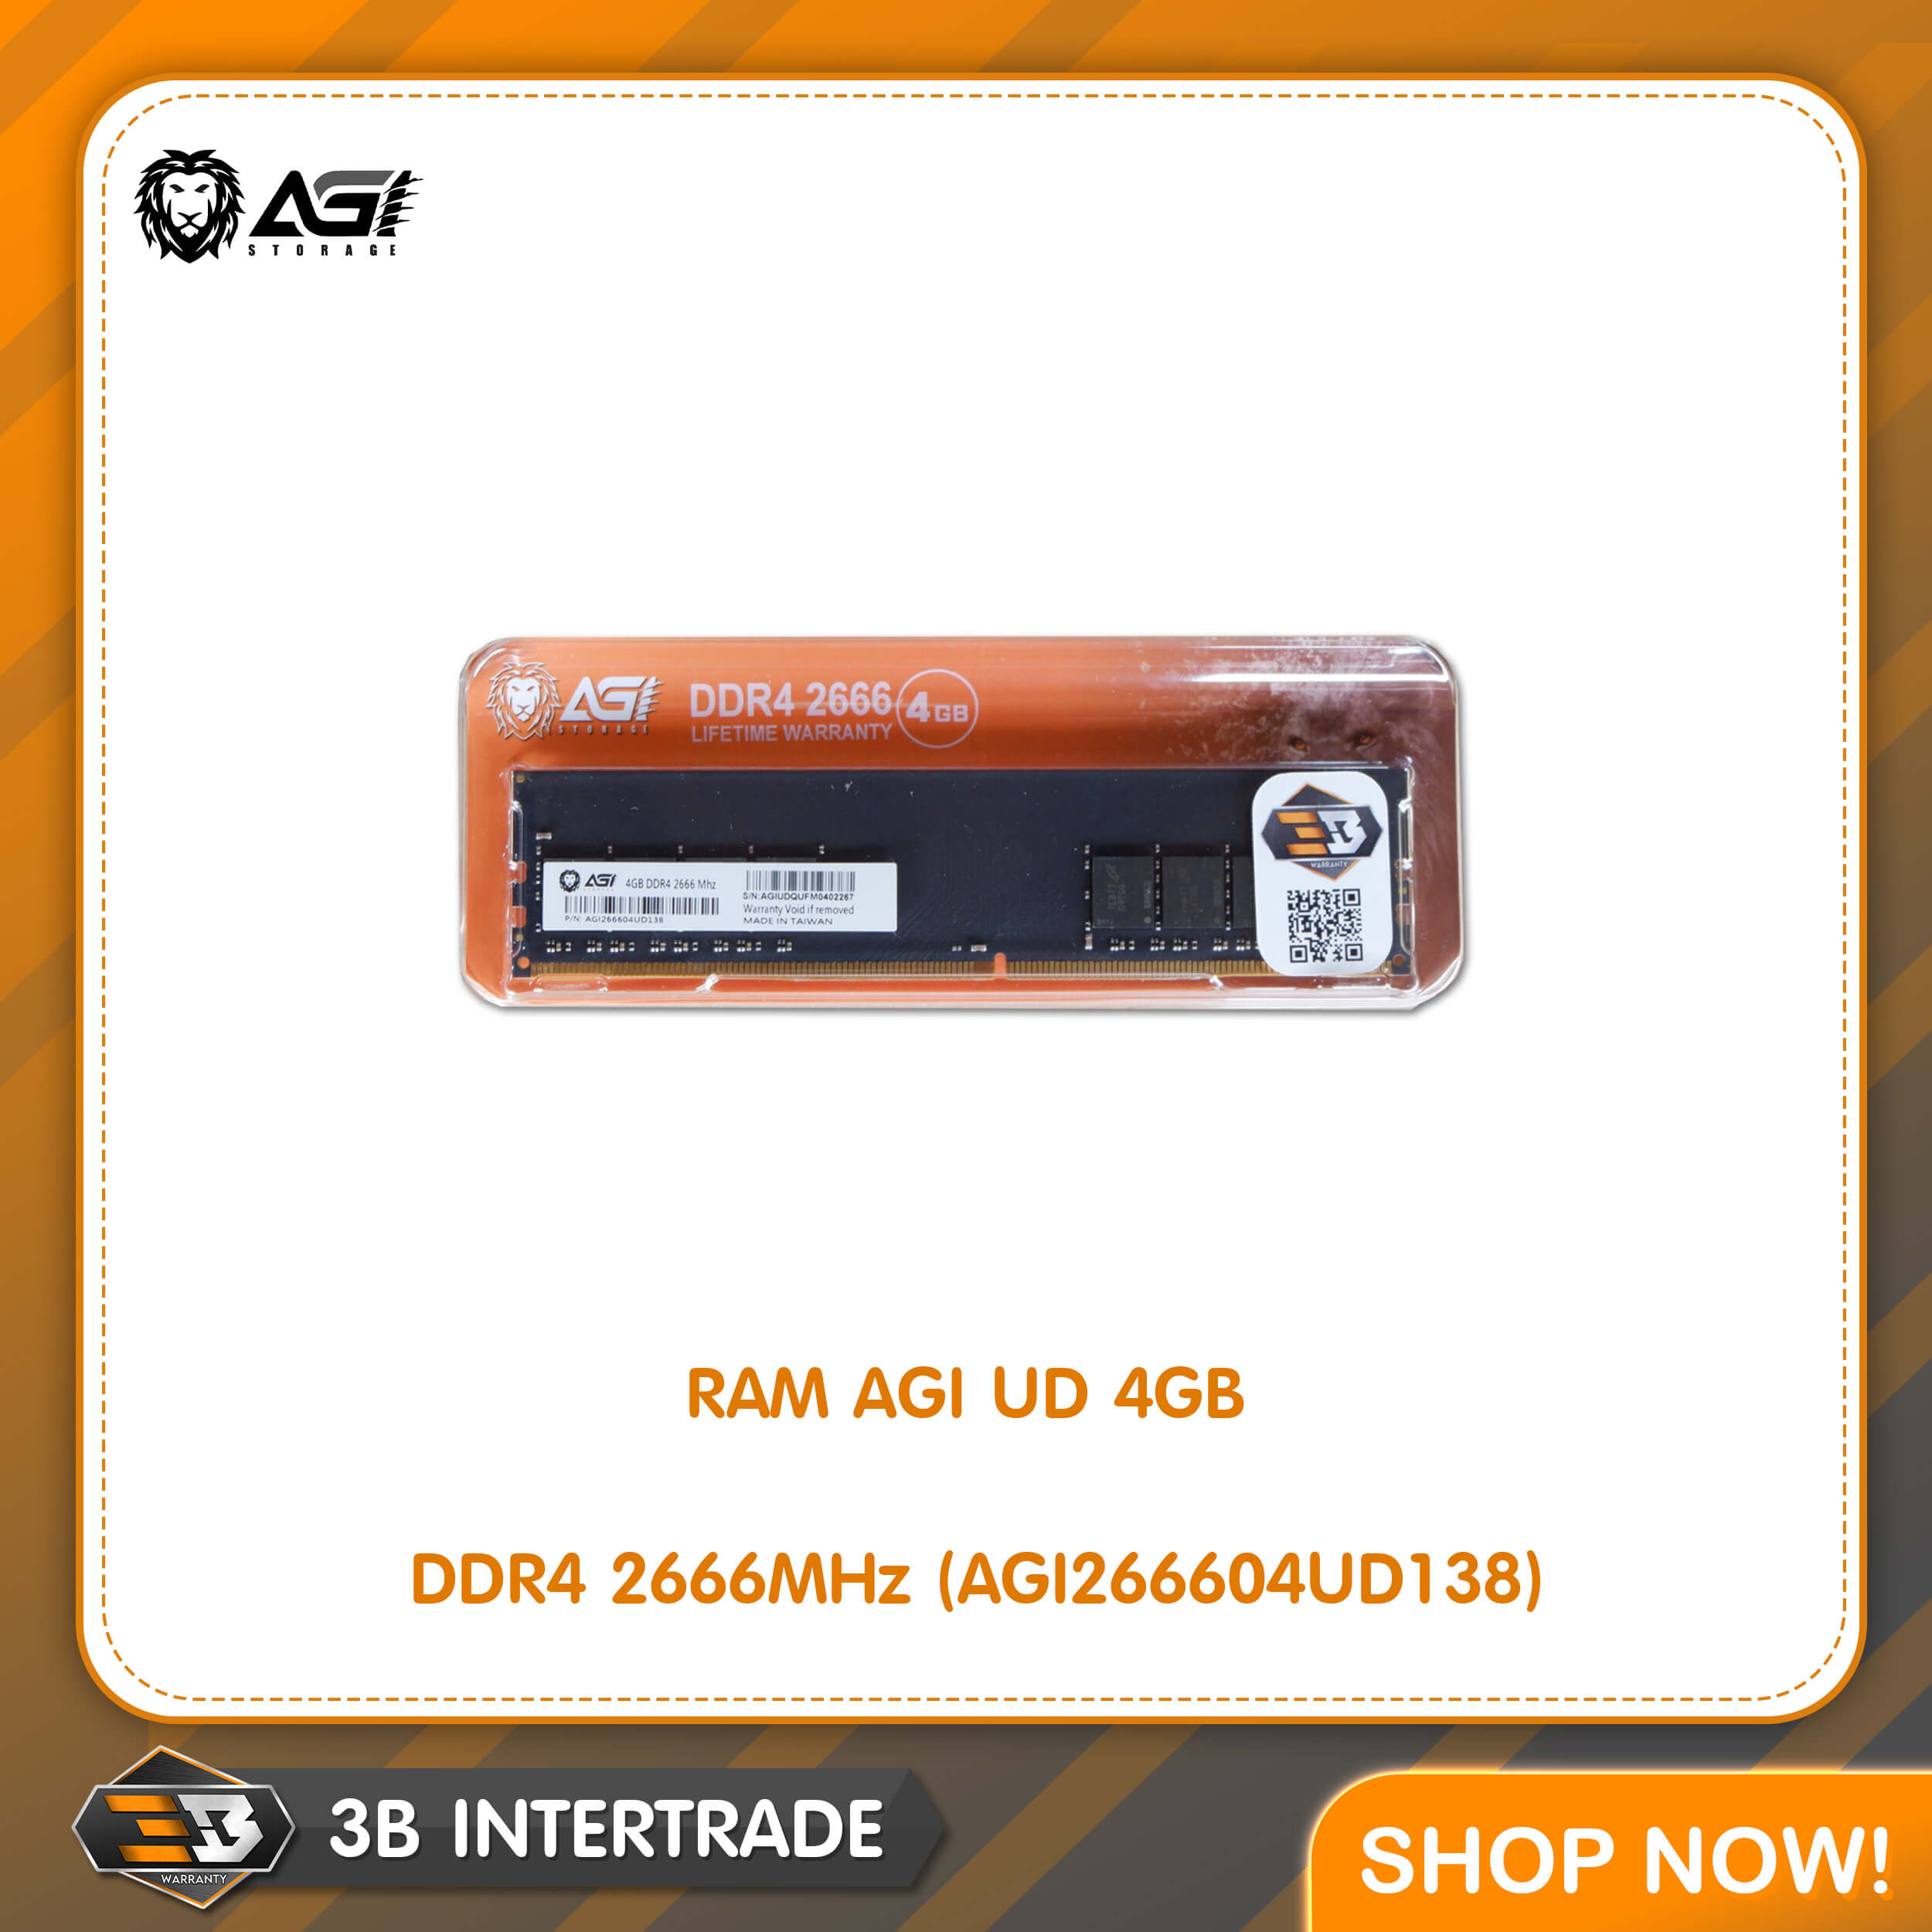 RAM AGI UD 4GB DDR4 2666MHz